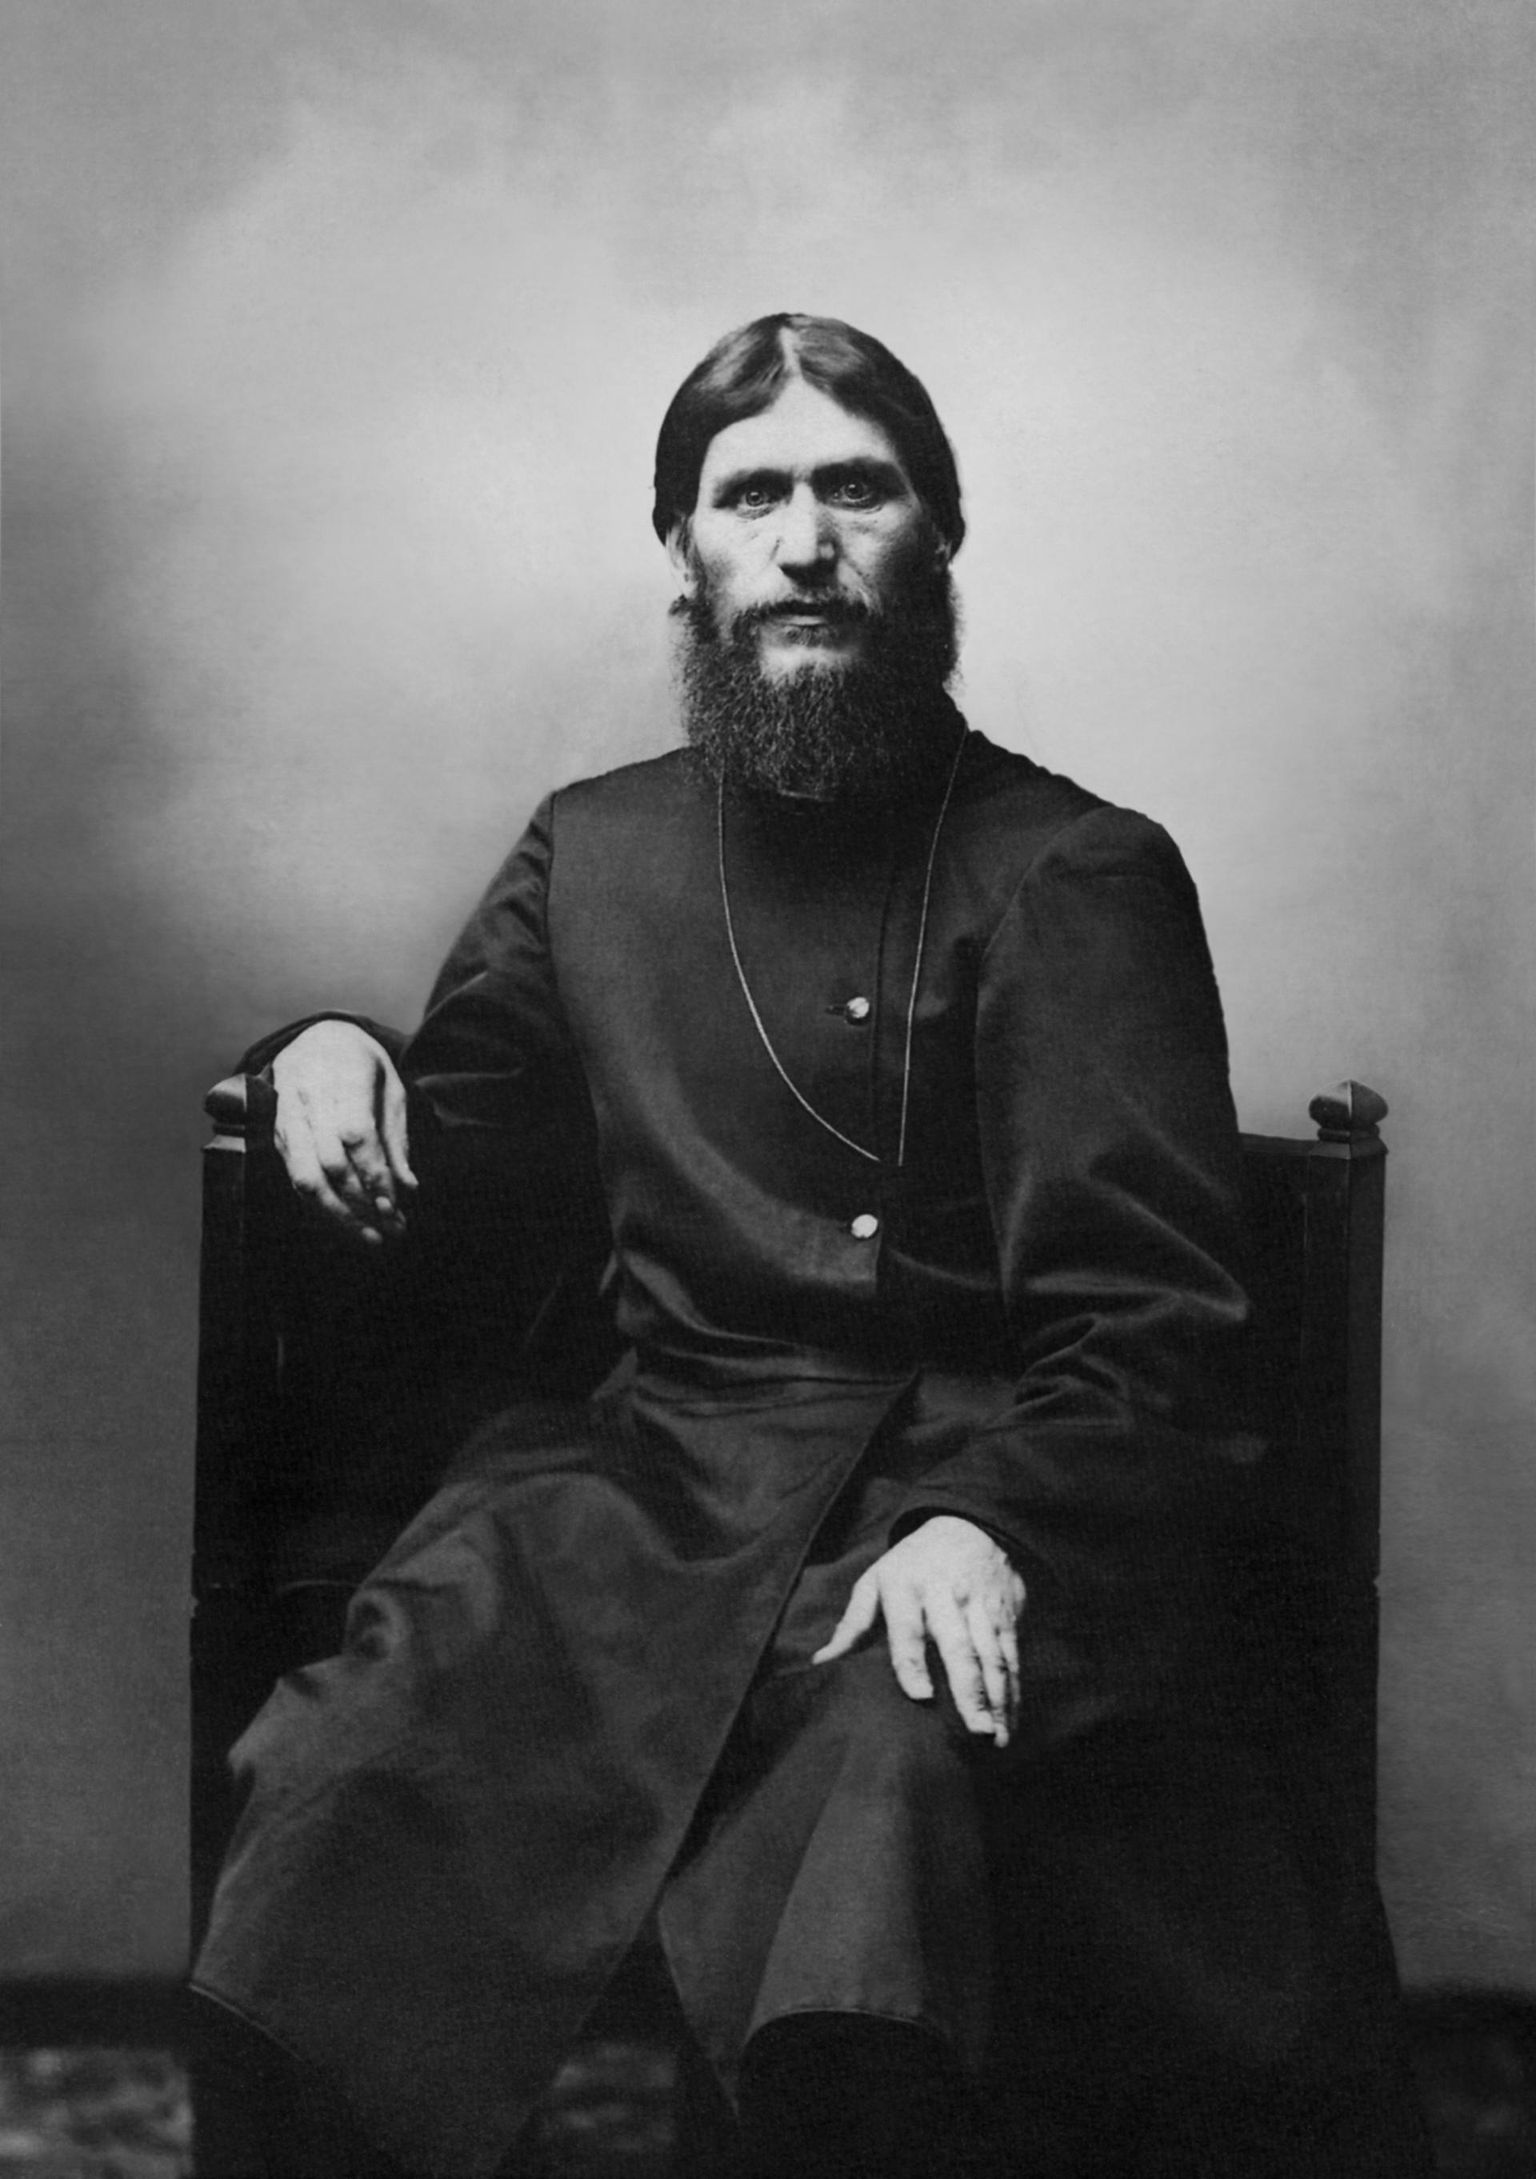 Grigori Rasputinil oli Vene tsaari Nikolai II perekonnas õukonna meelest liiga tähtis positsioon. Tsaari lähedased proovisid teda kõrvaldada alustuseks mürgitamise läbi.